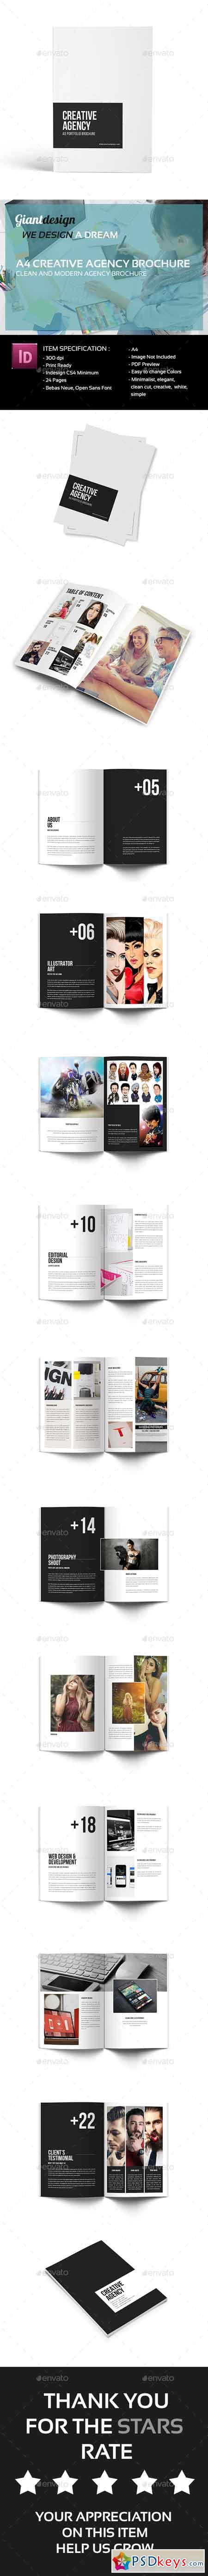 Creative Agency - A4 Portfolio Brochure 19529923